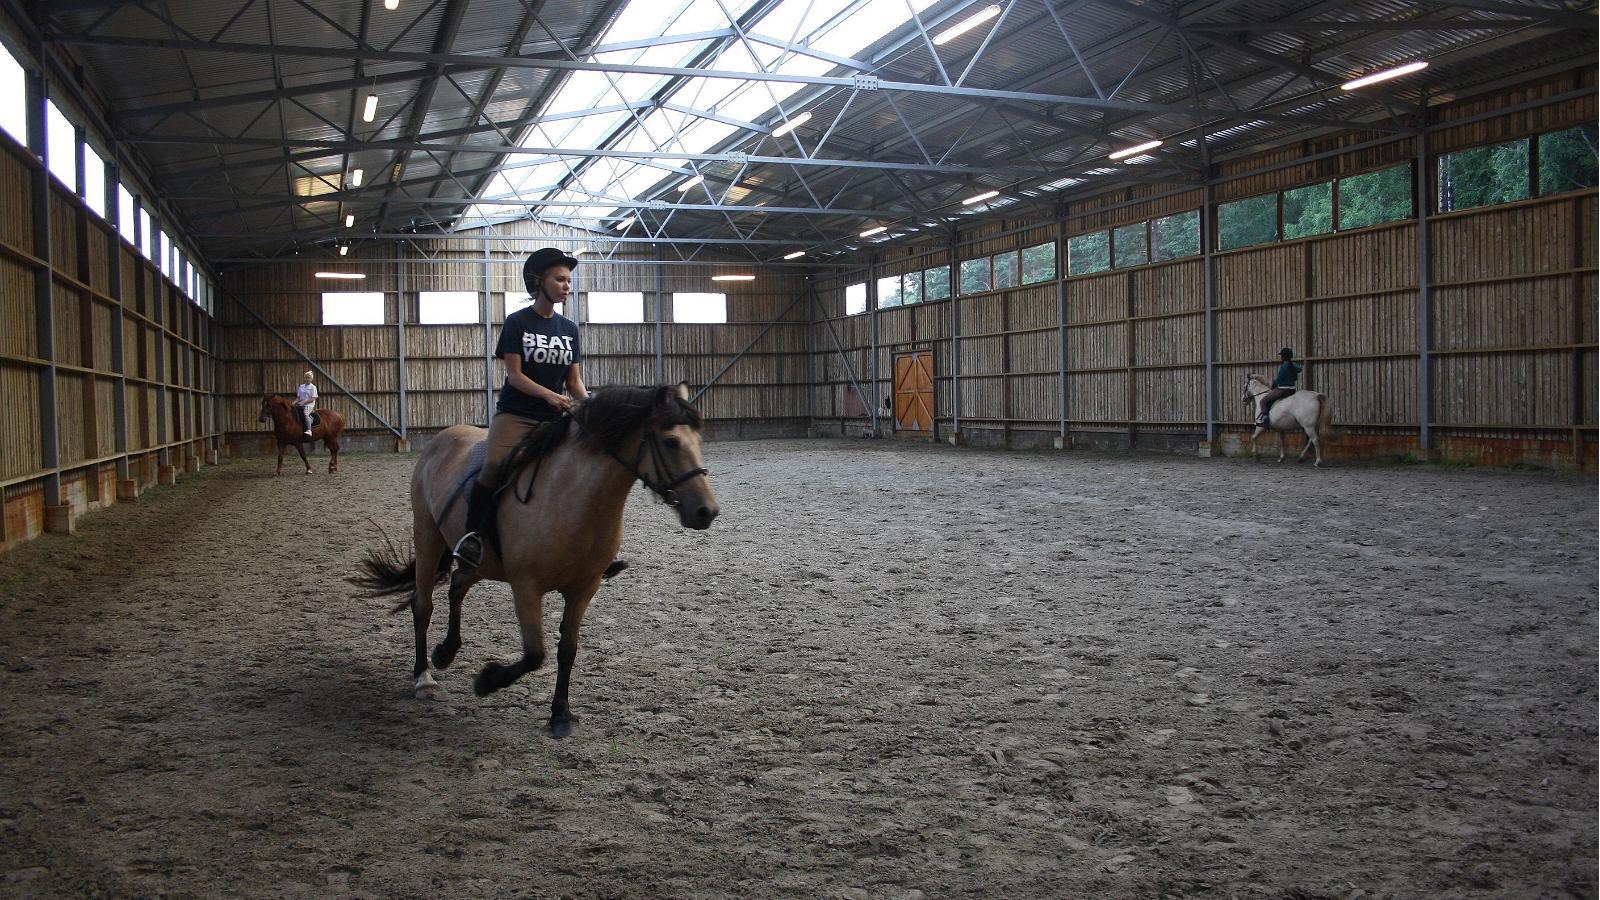 Saimniecības "Maria" jāšanas sporta centrs - izjādē ar zirgiem pa "Maria" saimniecības takām